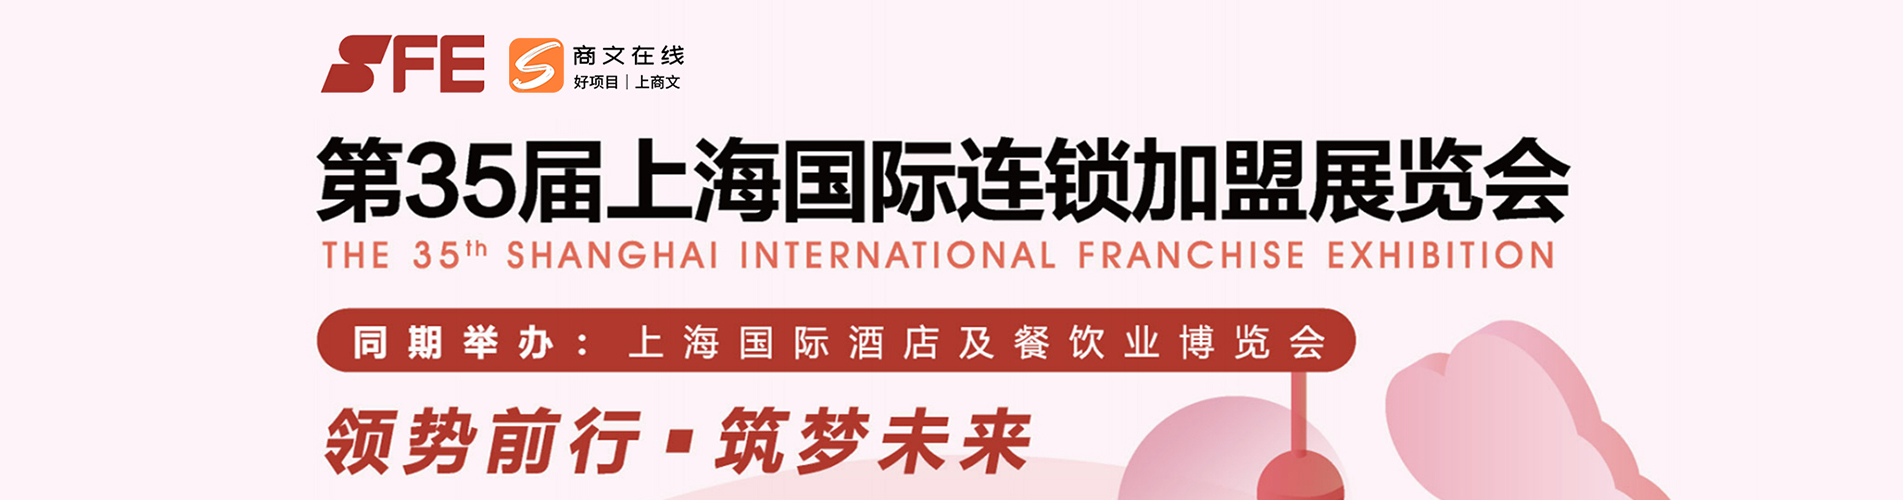 第35届上海国际连锁加盟展览会